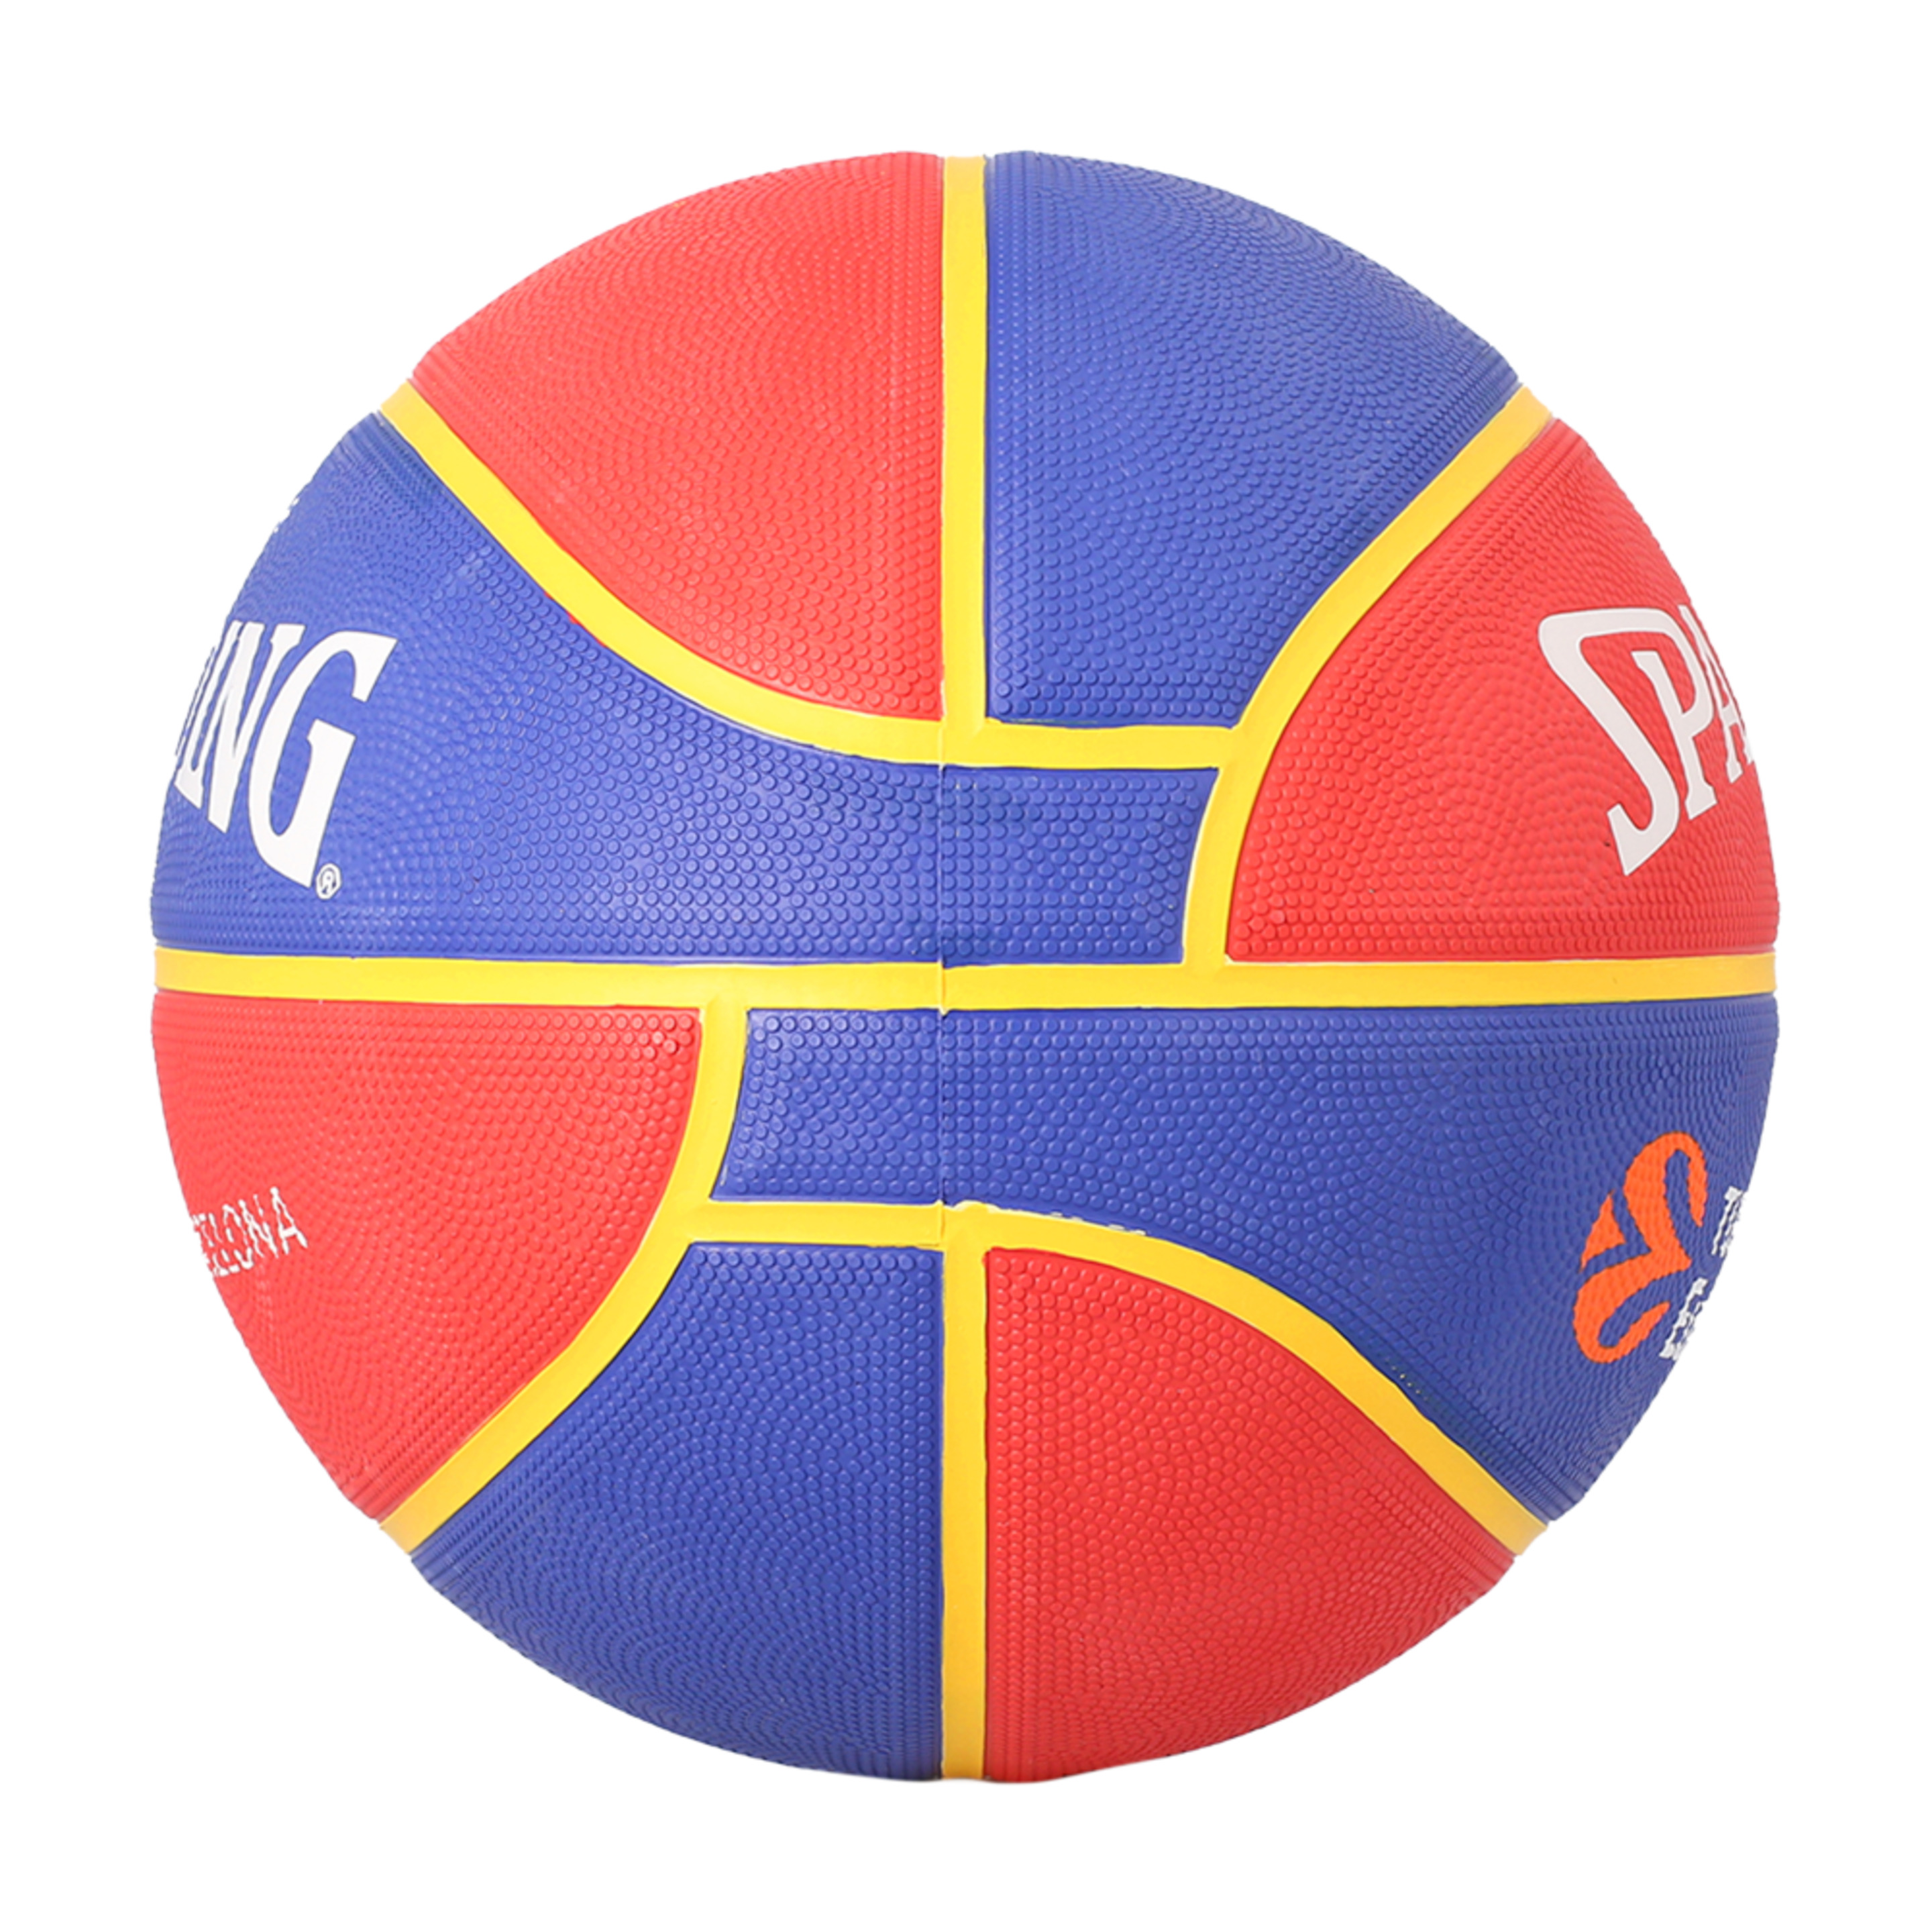 Balón De Baloncesto Spalding Fc Barcelona